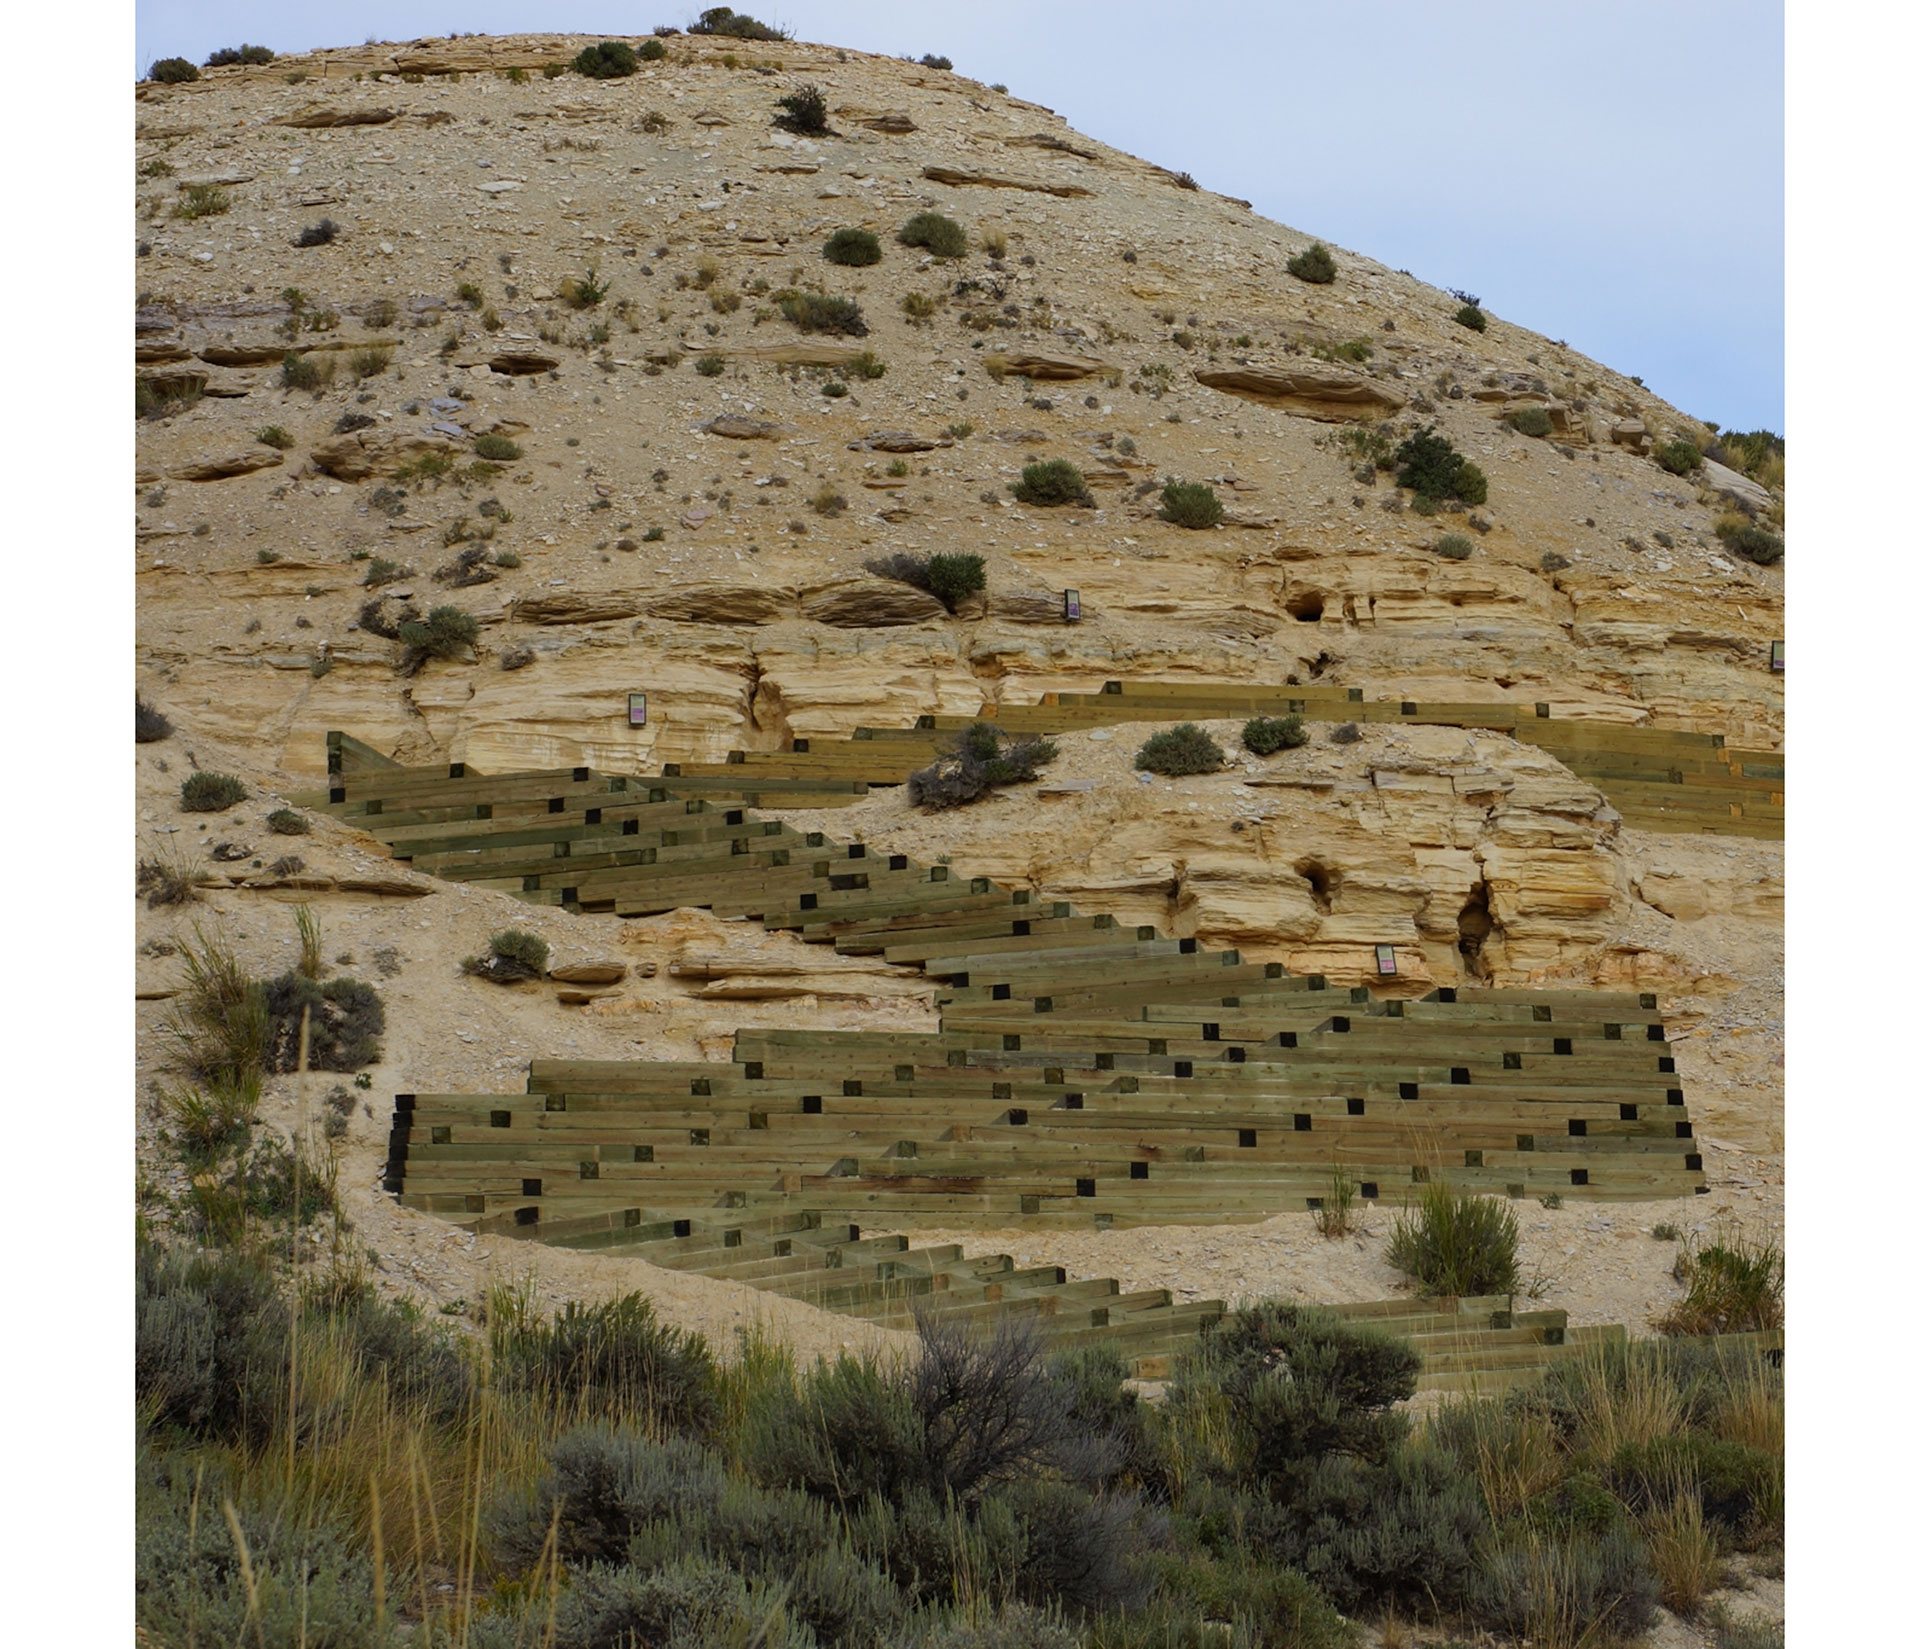 FOTOGRAFÍA DEL SERVICIO DE PARQUES NACIONALES - Unas escaleras conducen a la roca conservada de un antiguo lecho lacustre en el Monumento Nacional Fossil Butte de Wyoming. Los fósiles de murciélago recientemente descritos se encontraron a las afueras del parque, en terrenos privados.
